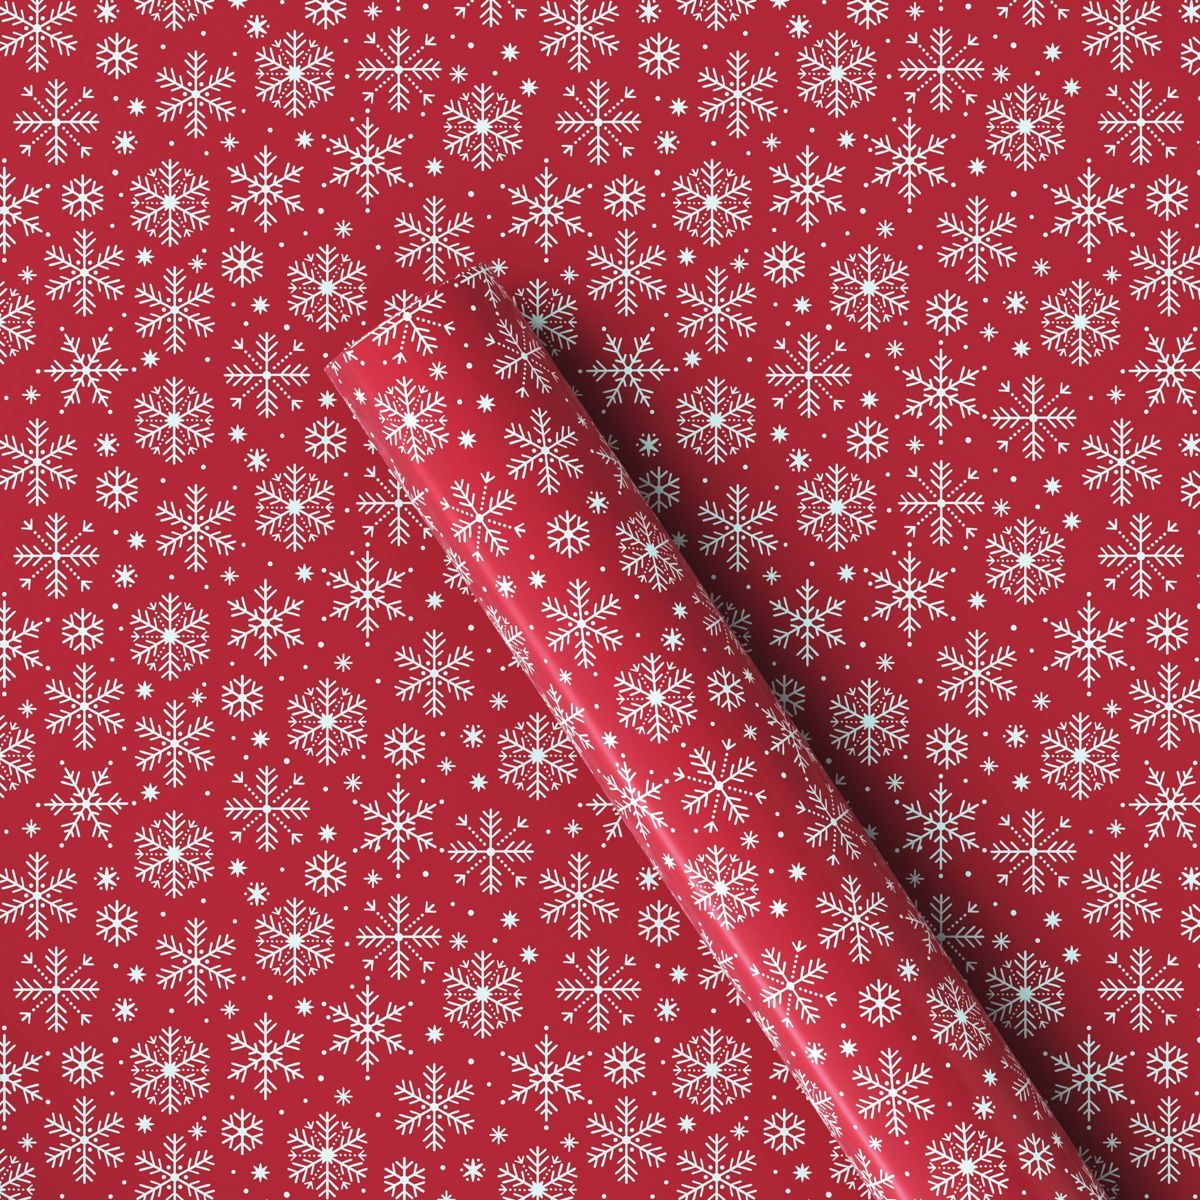 220 sq ft Snowflakes Christmas Gift Wrap Red - Wondershop™ | Target